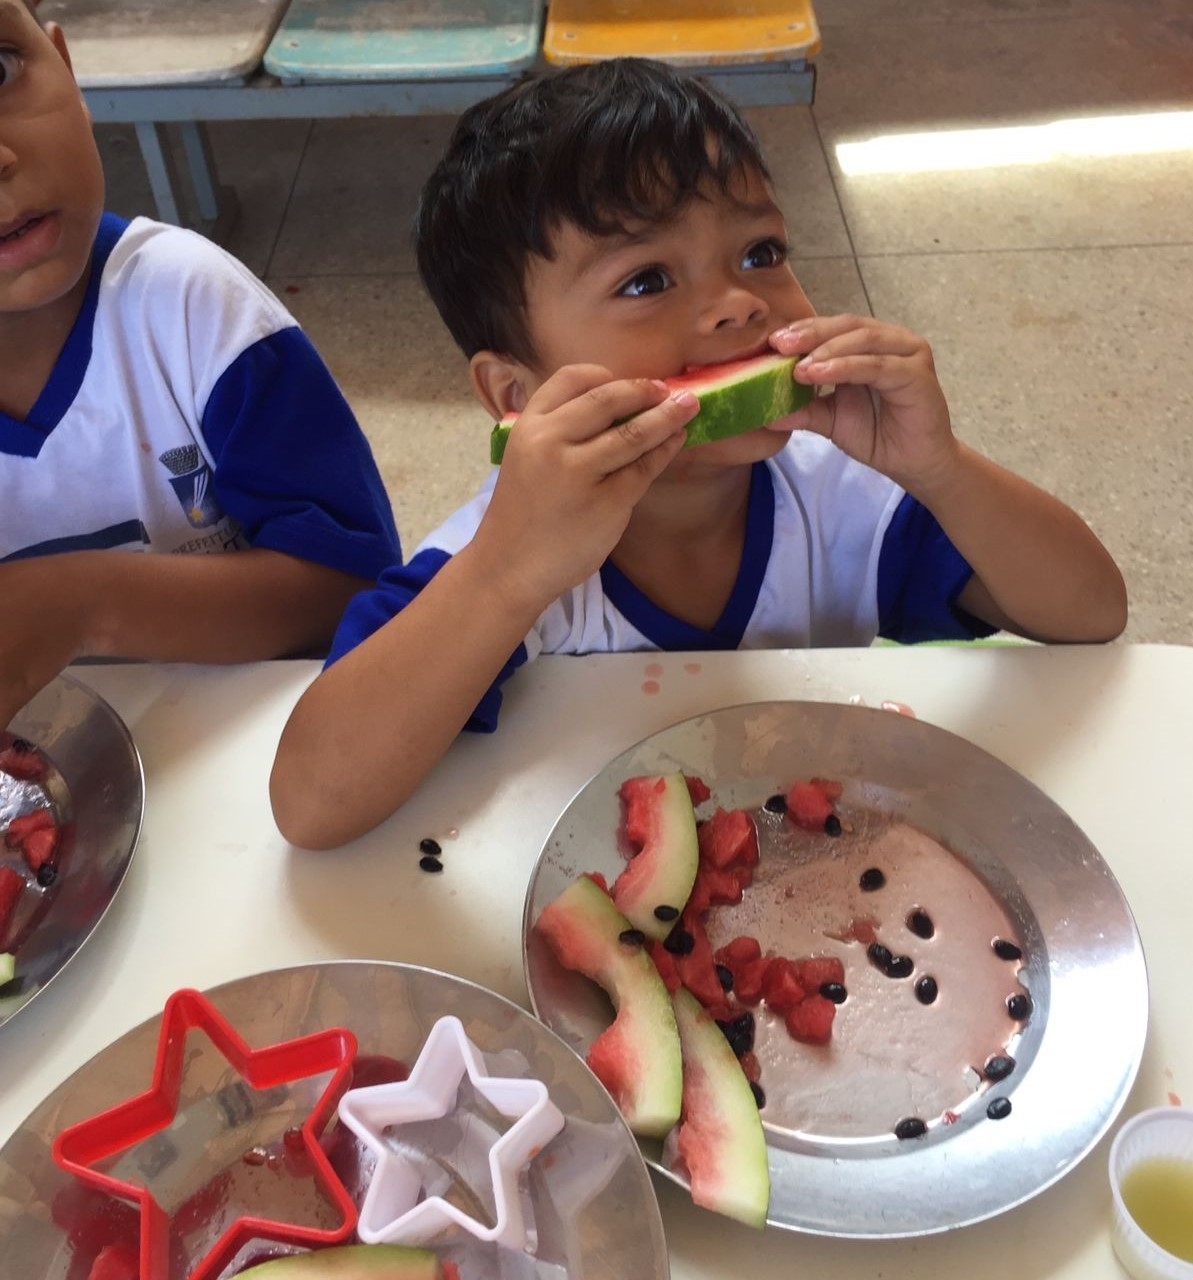 Setor de Nutrição da SMS realiza ação recreativa para estimular a alimentação saudável em crianças